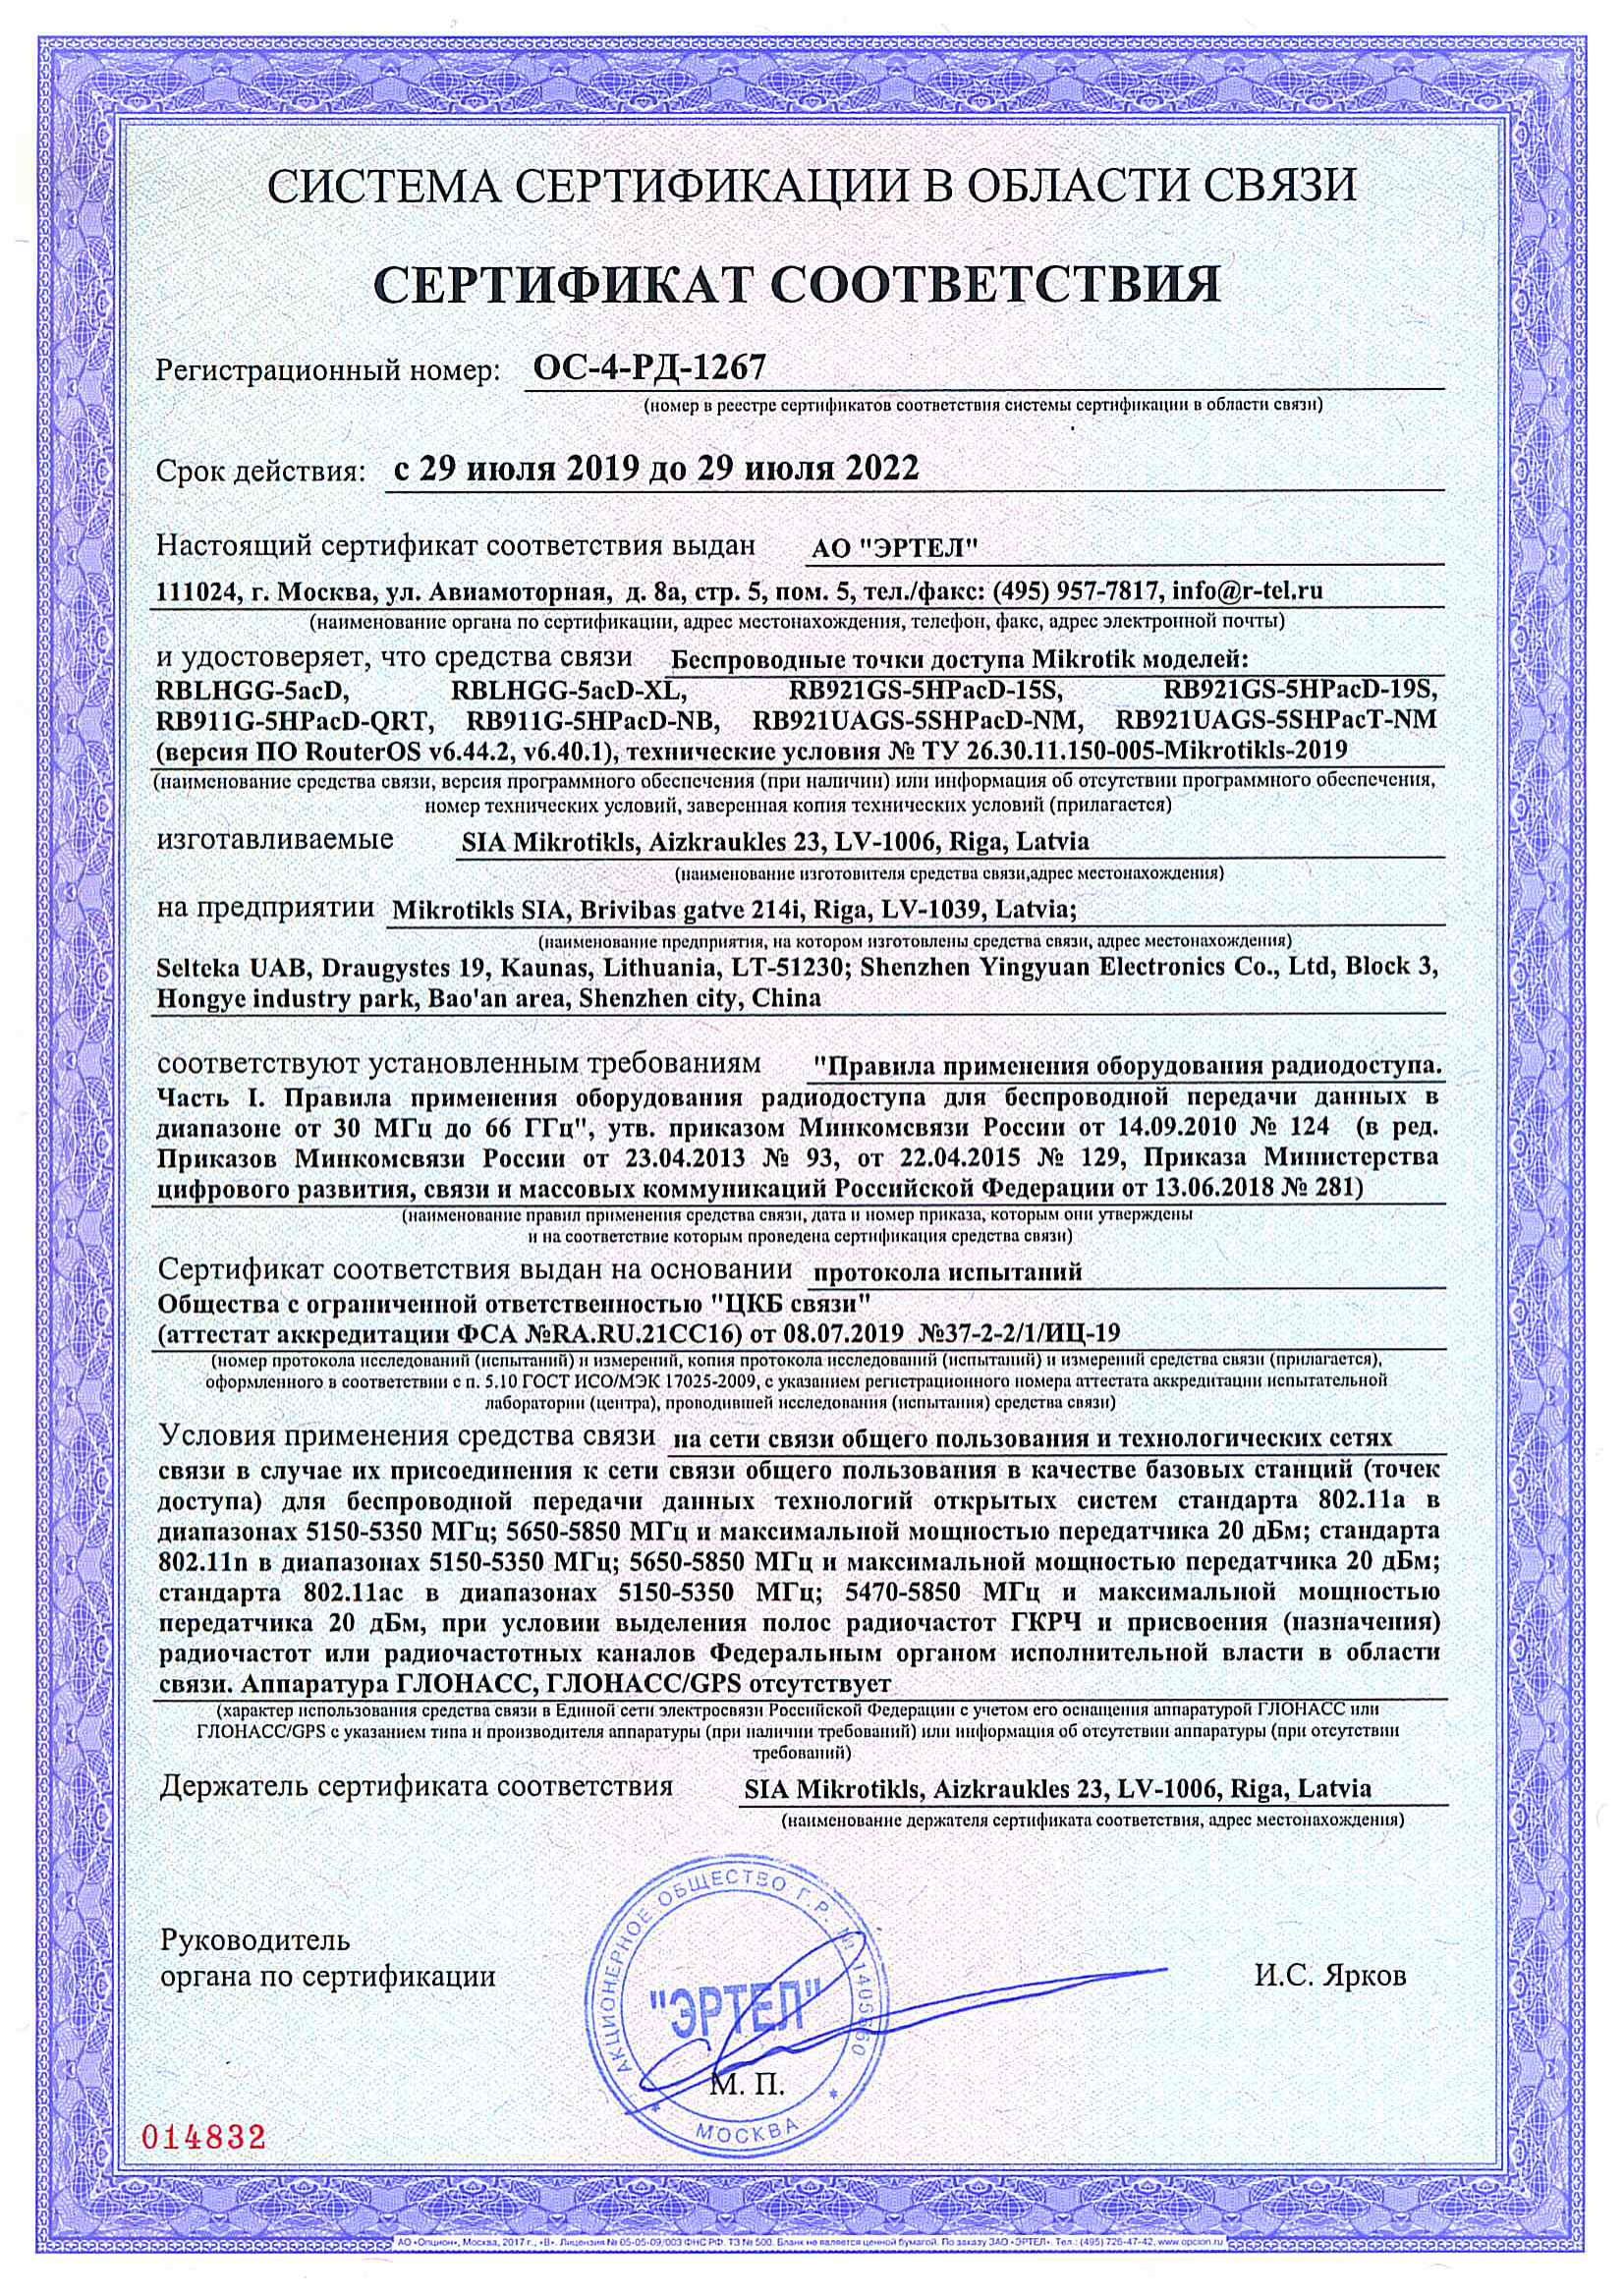 Сертификат соответствия в области связи ОС-4-РД-1267